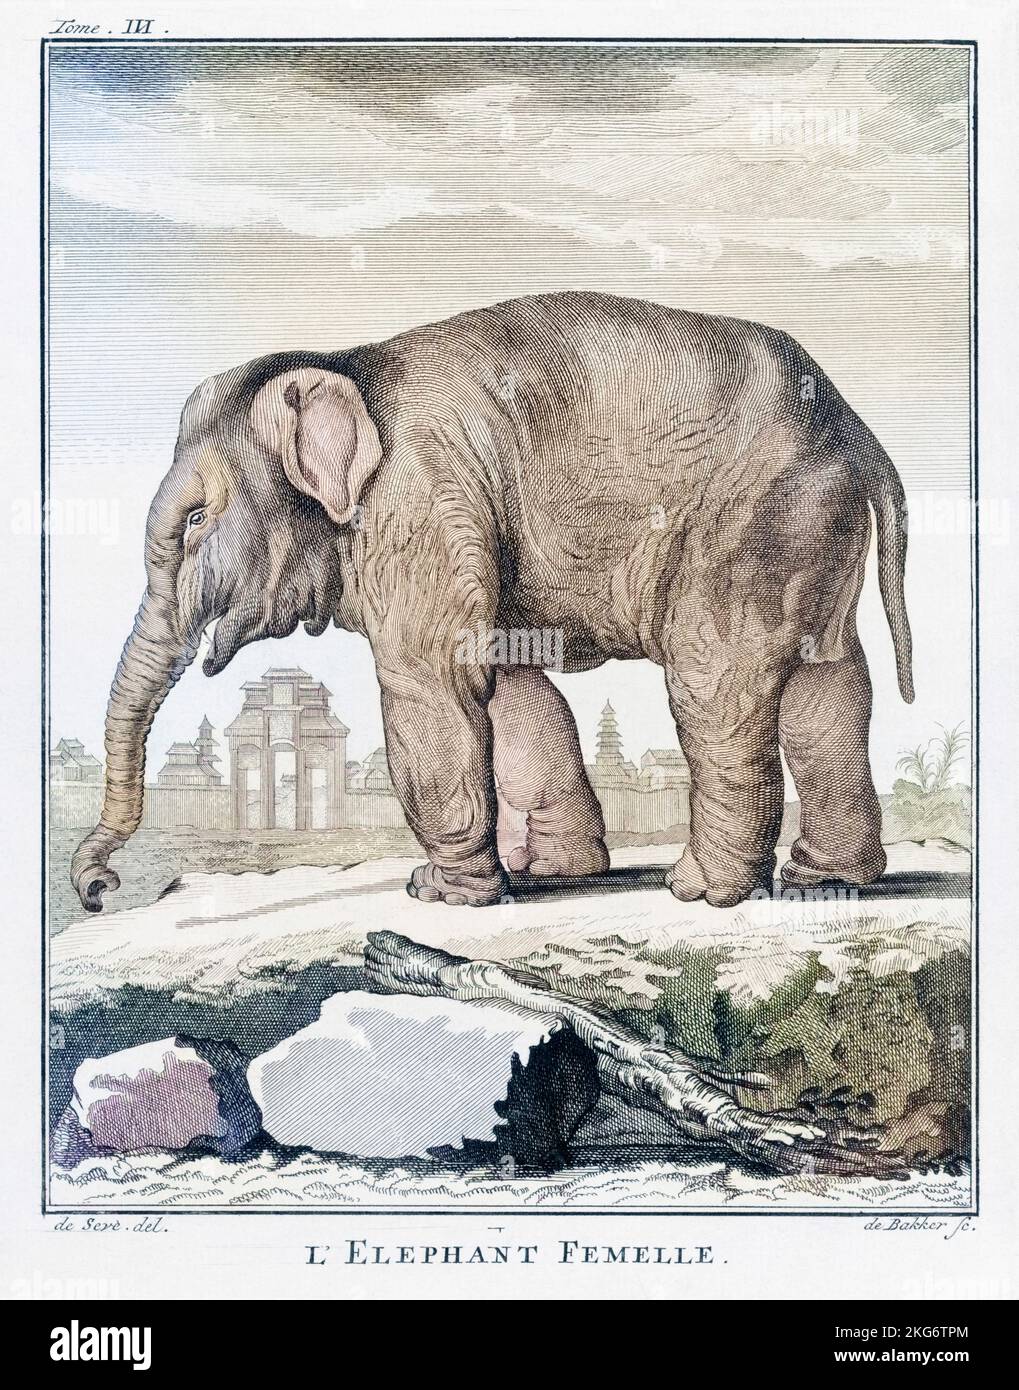 Elefantenweibchen. Nach einem Druck von Barent de Bakker aus dem späten 18.. Jahrhundert nach einer Zeichnung von De Seve. Spätere Farbgebung. Stockfoto